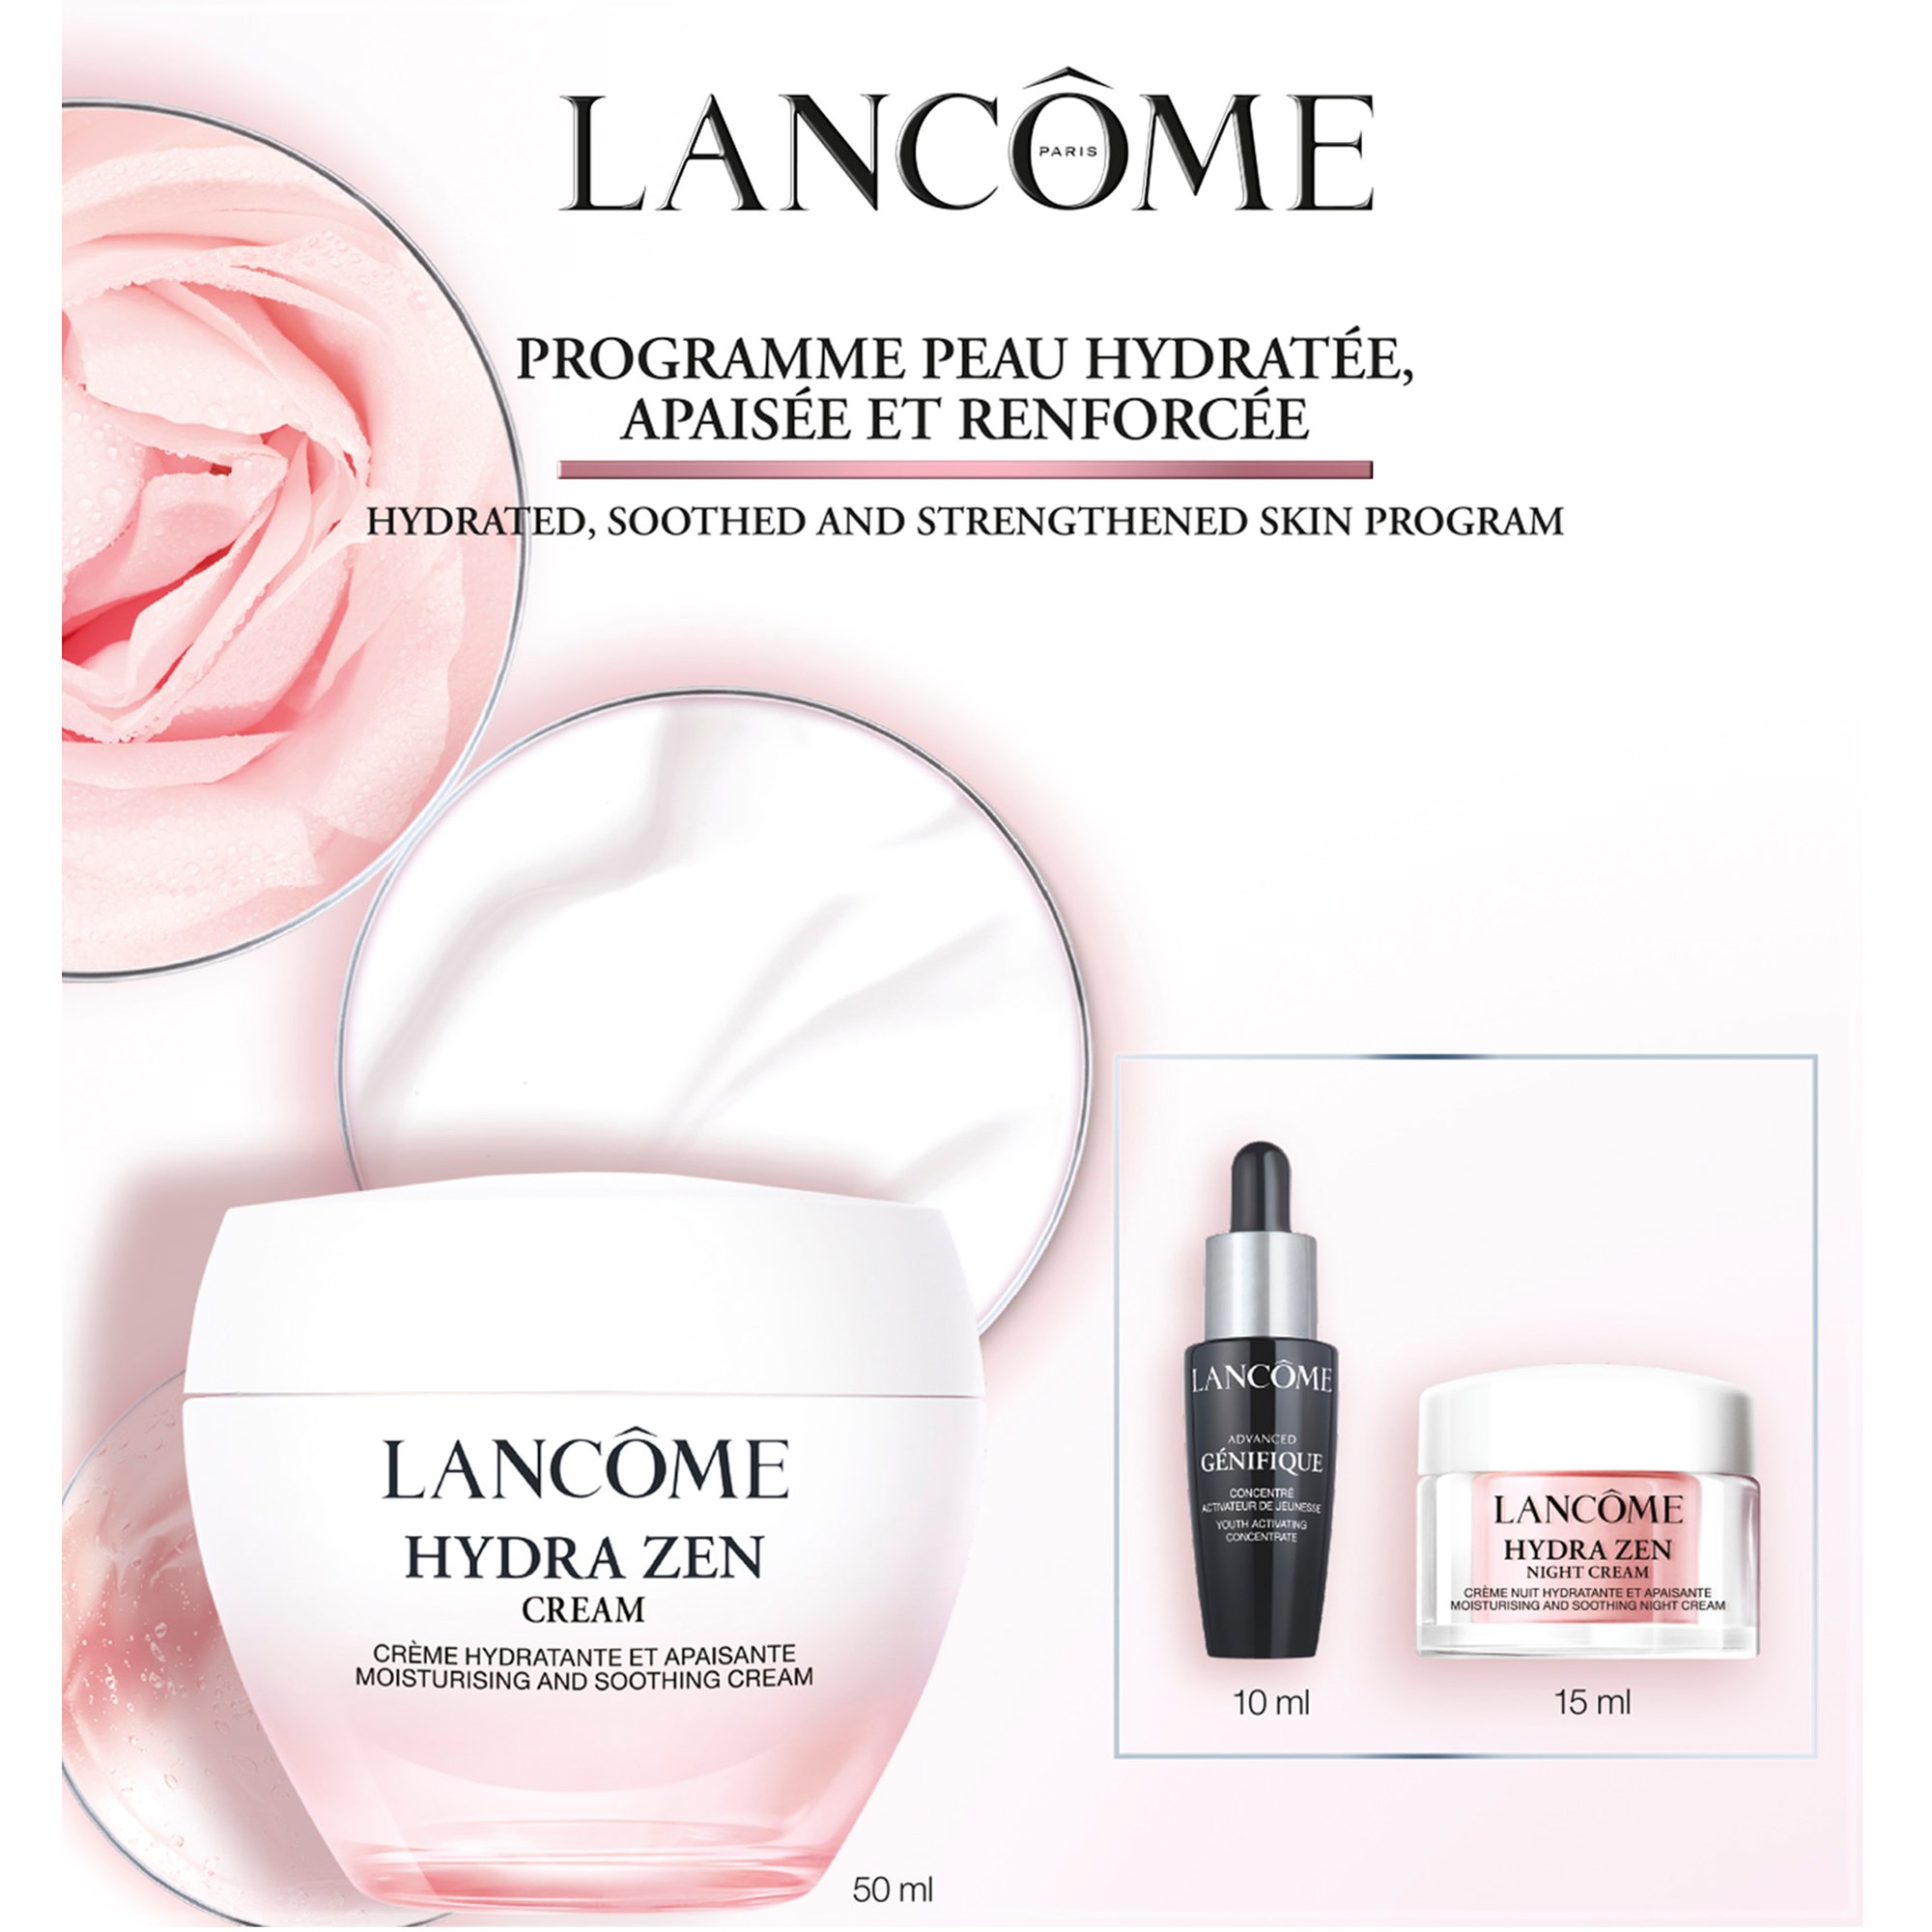 Lancome Lancôme Hydra Zen Skincare Set